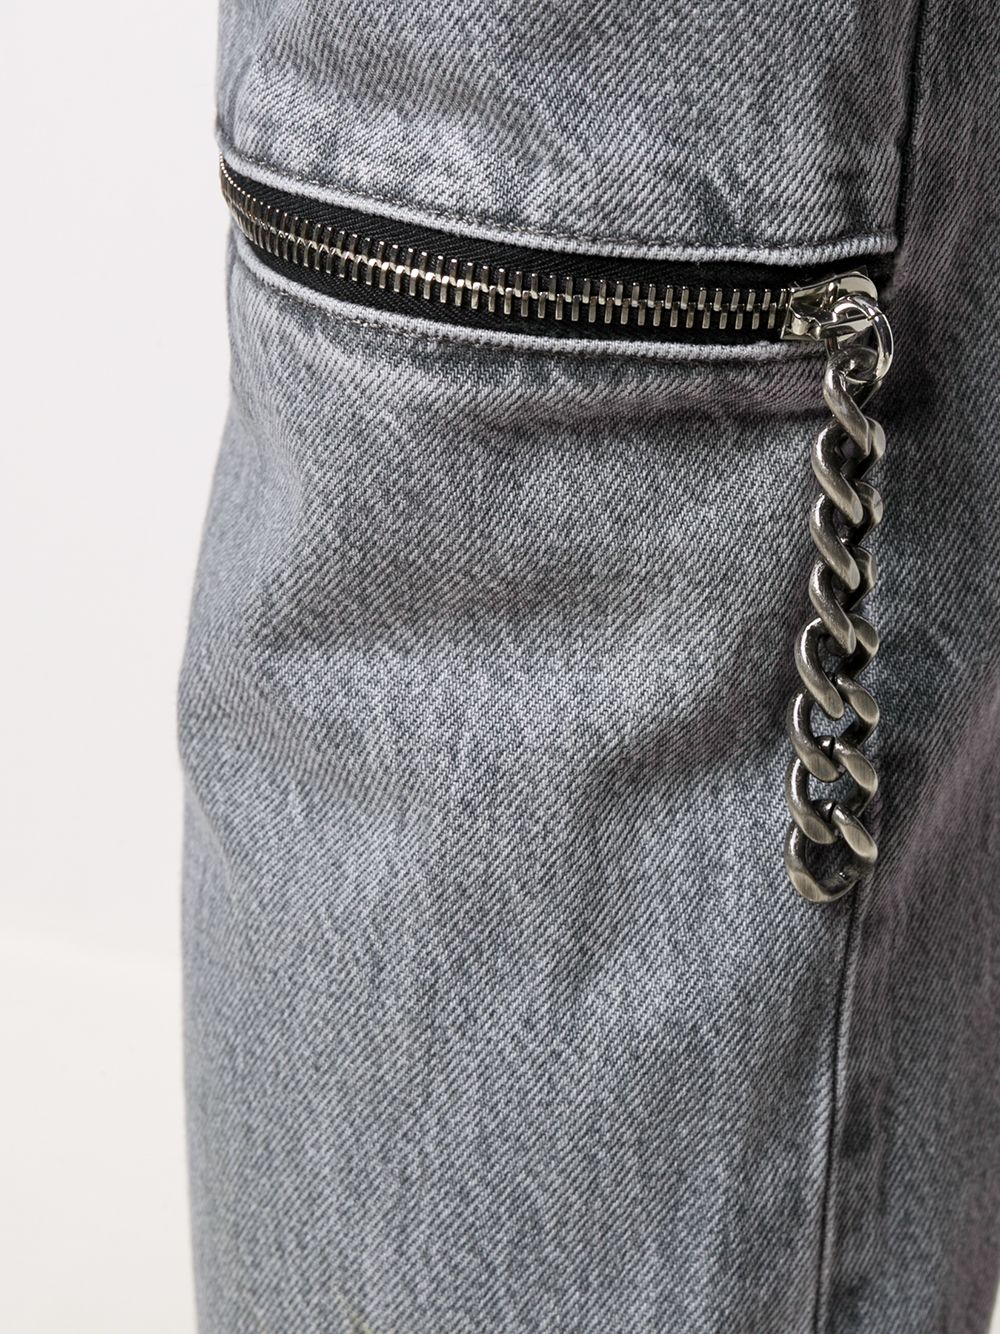 фото Raf simons прямые джинсы с молниями